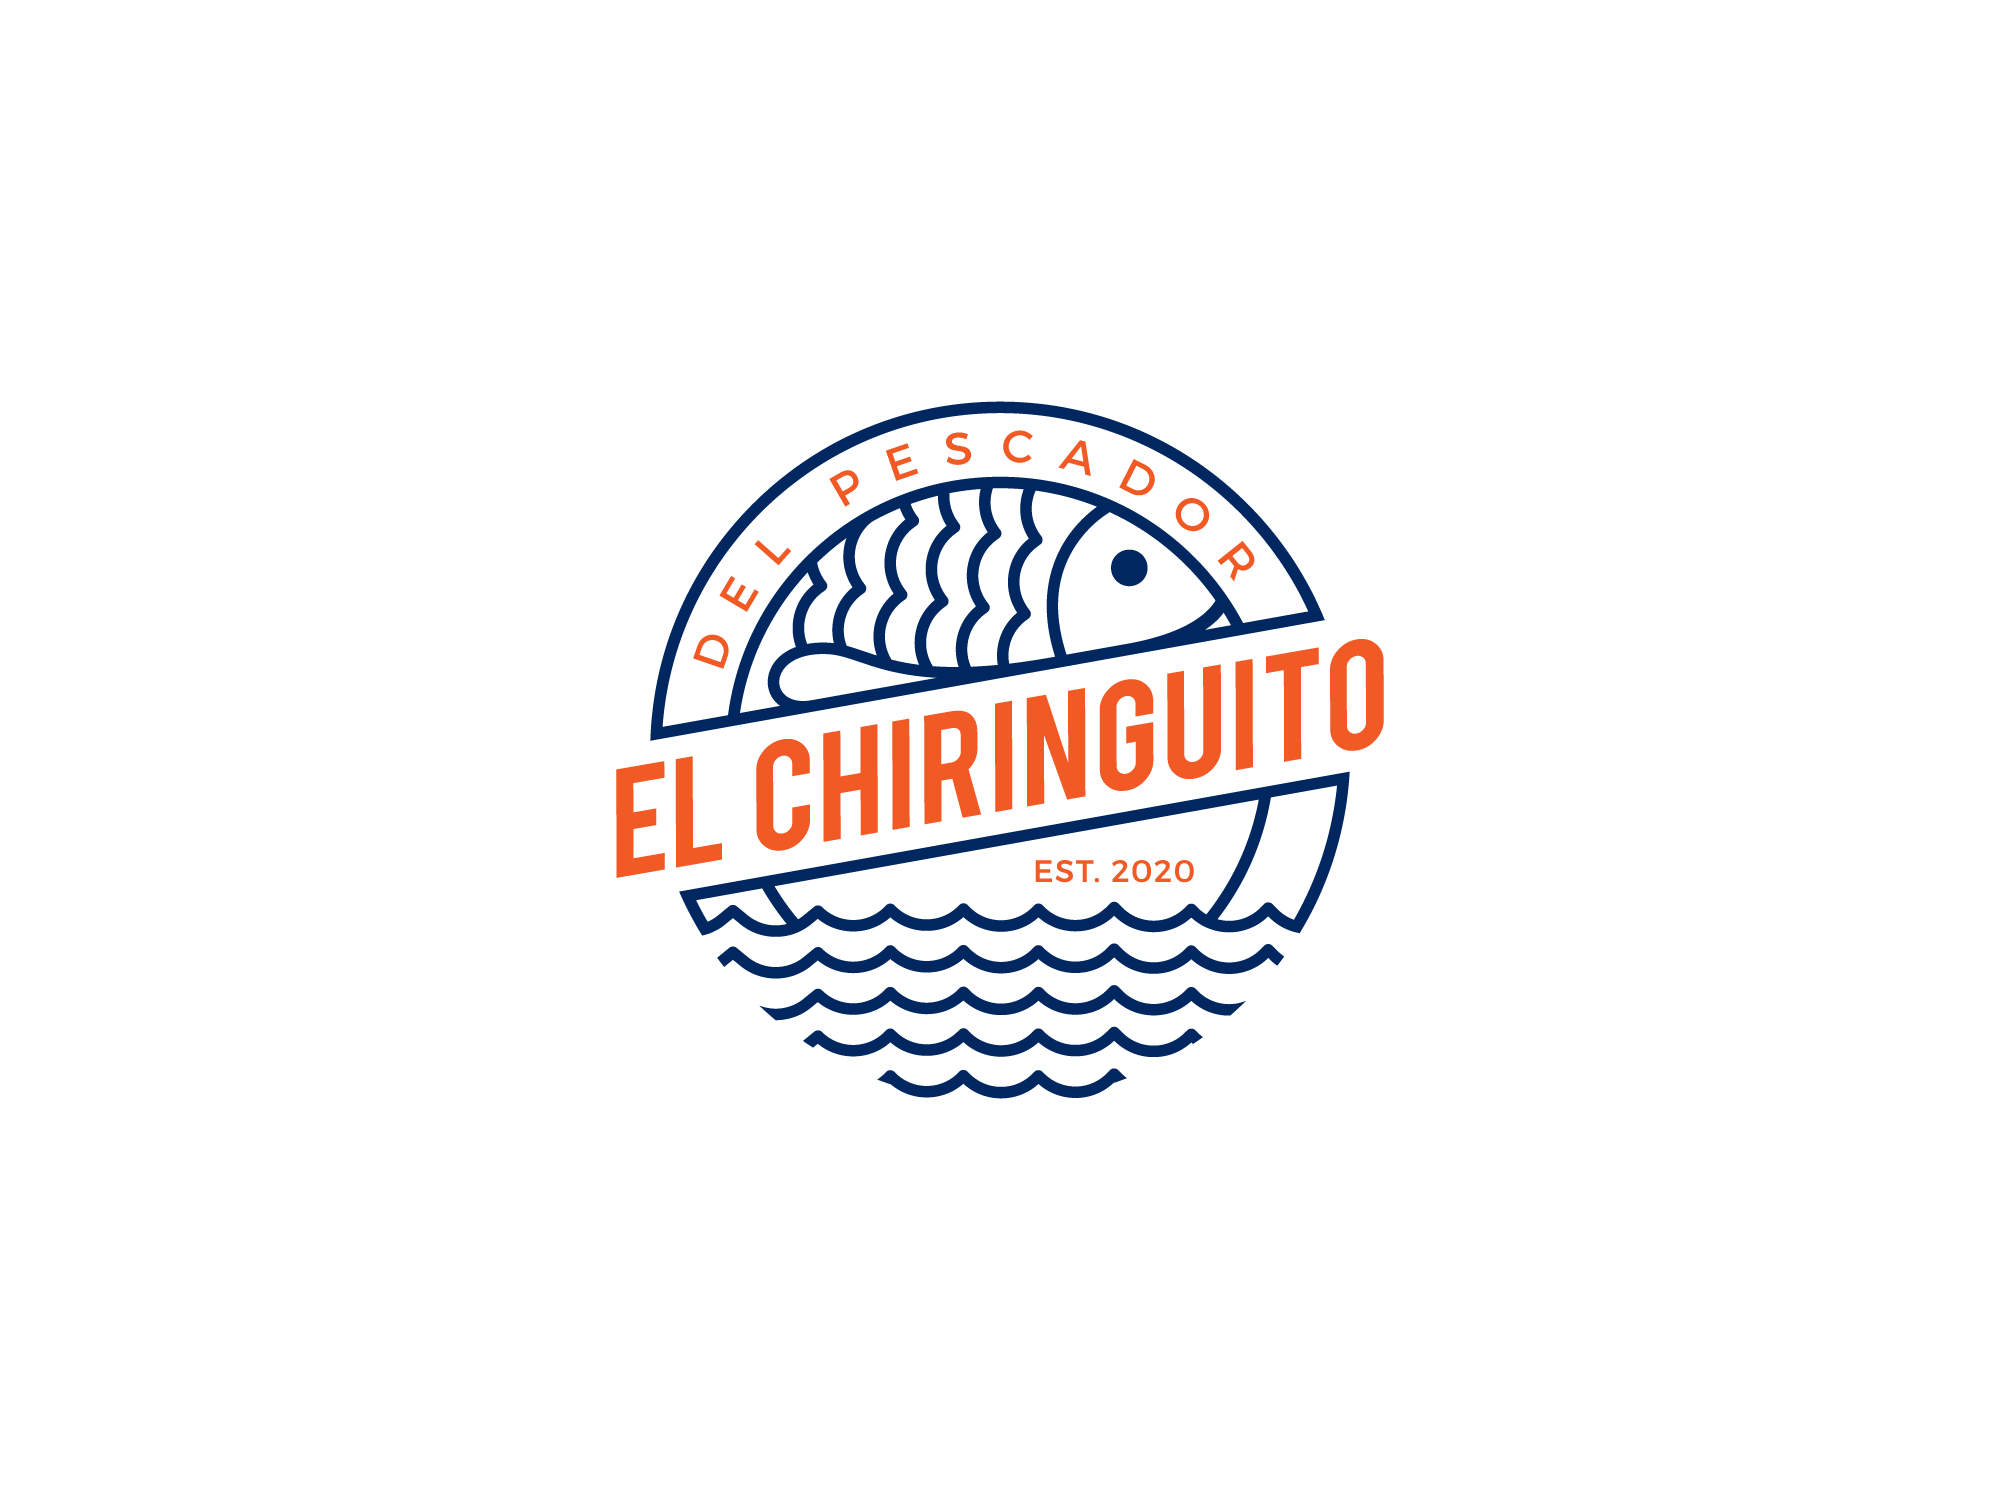 Logo Design #305 | 'EL CHIRINGUITO' design project | DesignContest ®